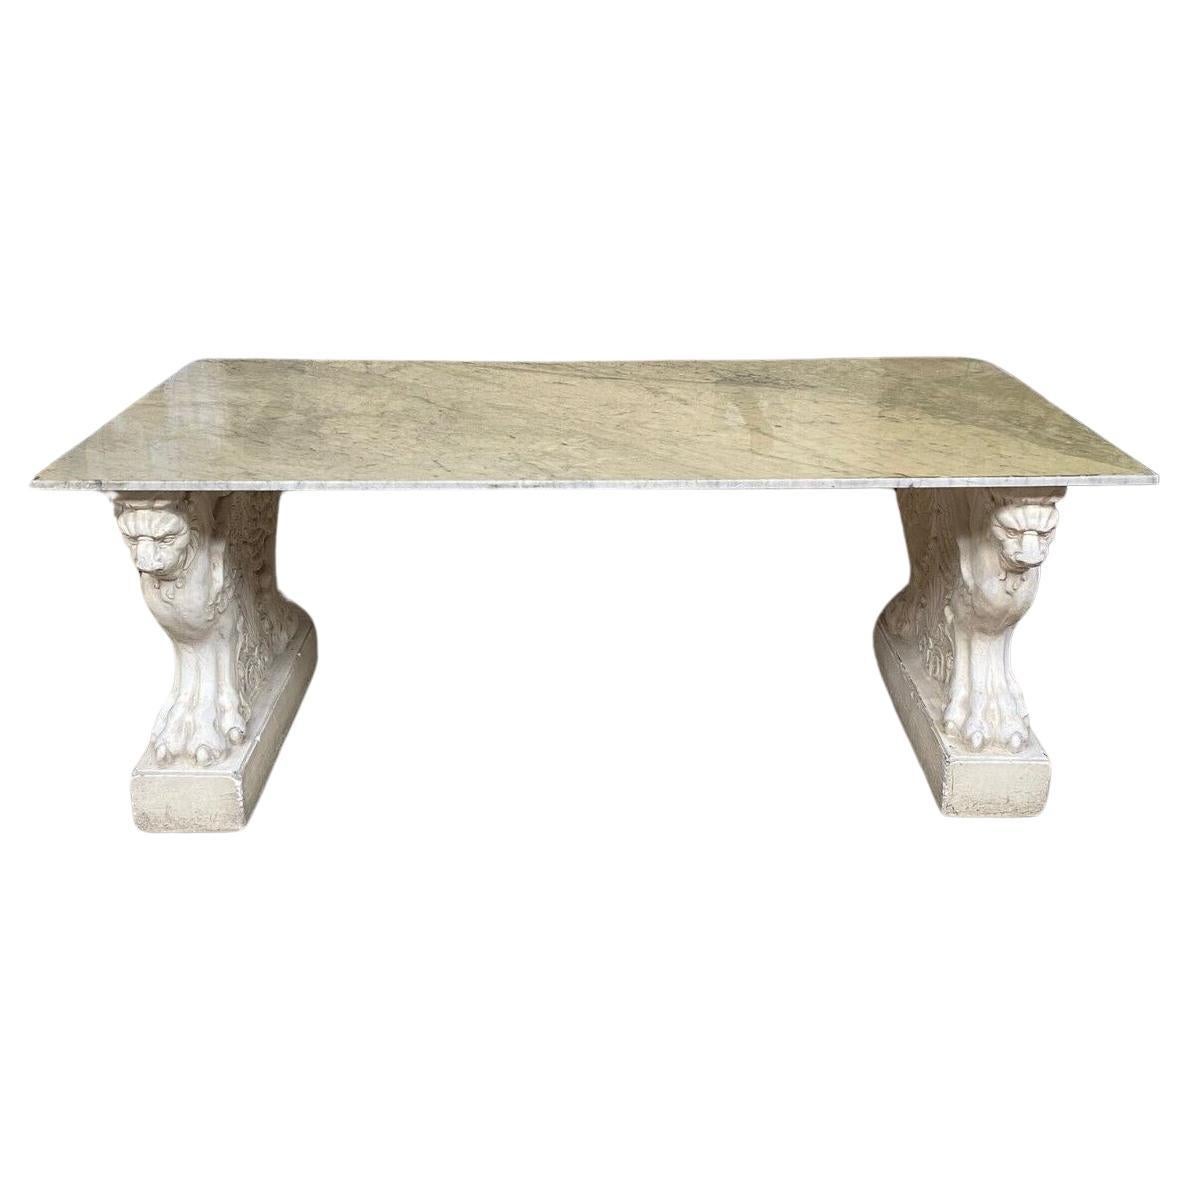 Grande table en marbre sculptée avec griffons ailés à la base